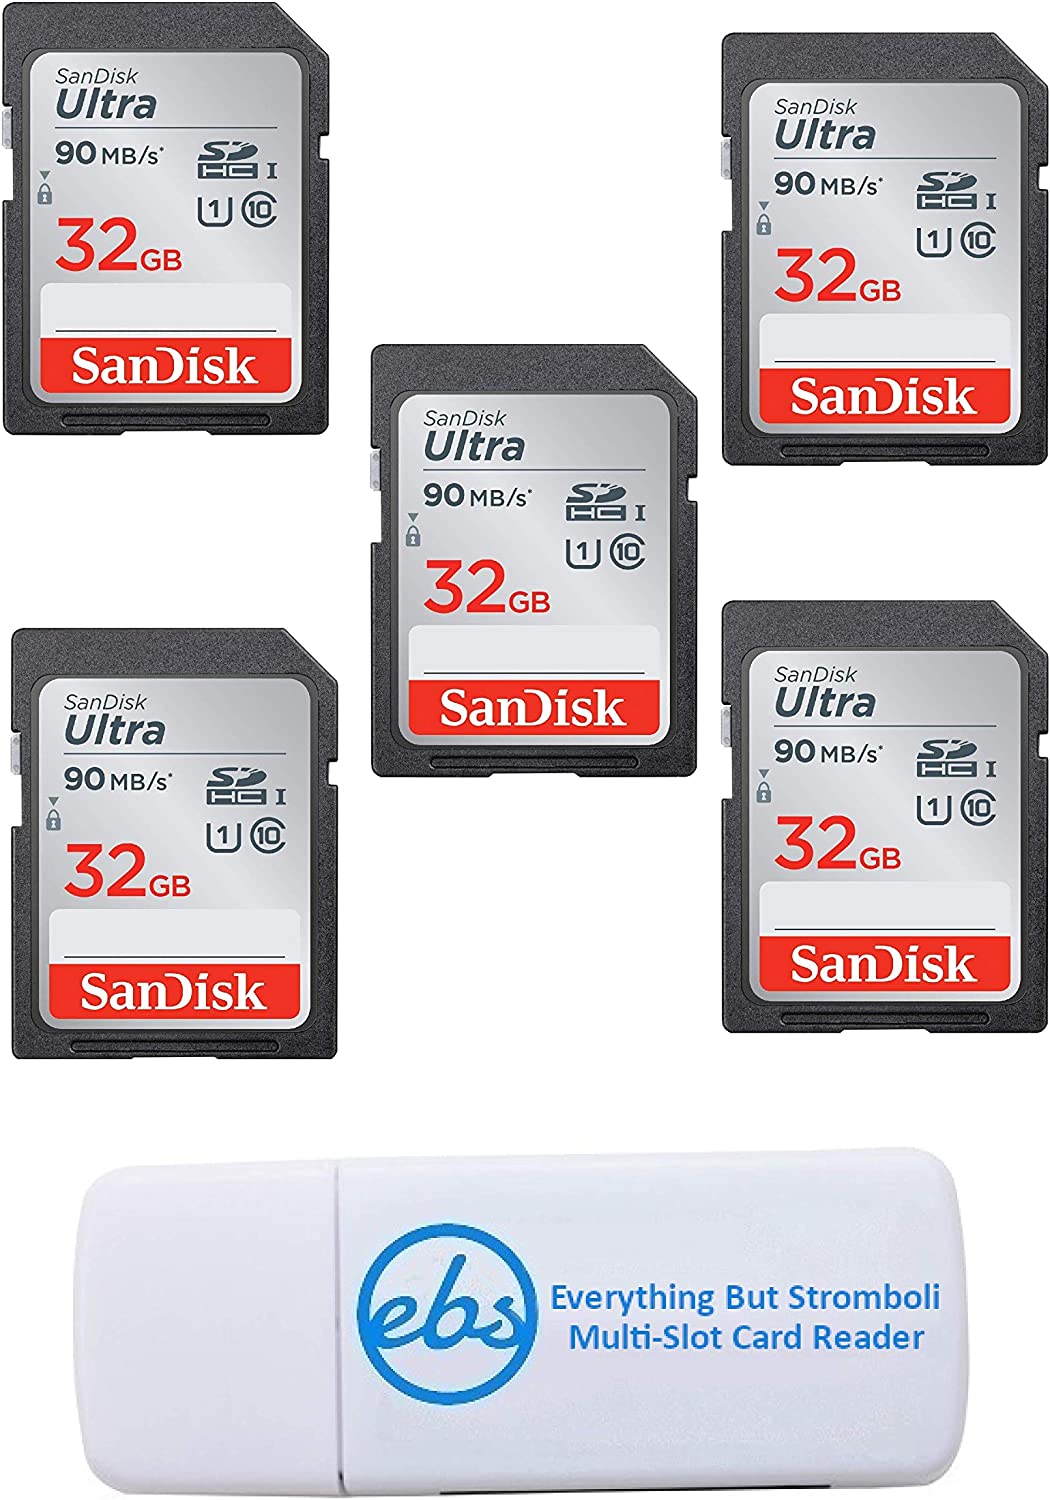 샌디스크 울트라 - 5팩 번들 UHS-I 클래스 10 SD 플래시 메모리 카드 소매 SDSDUNC-032G-GN6 스트롬볼리 TM 콤보 리더 제외한 모든 것 포함